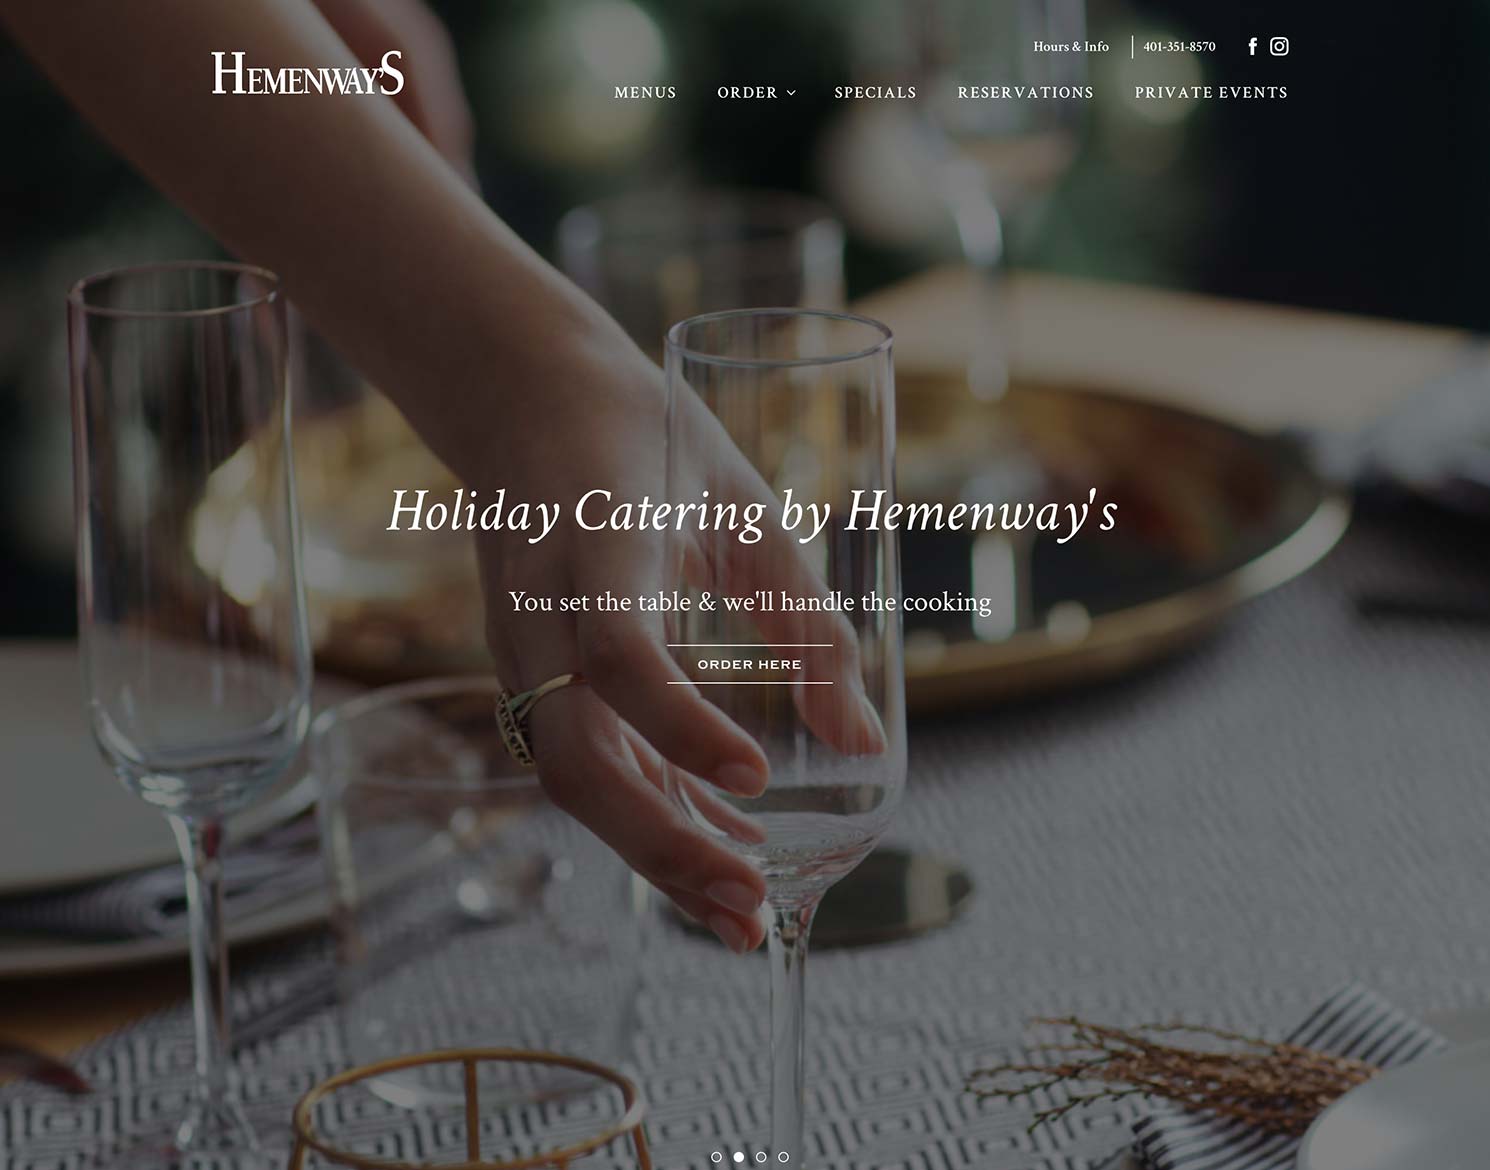 Newport Restaurant Group website design for Hemenway's